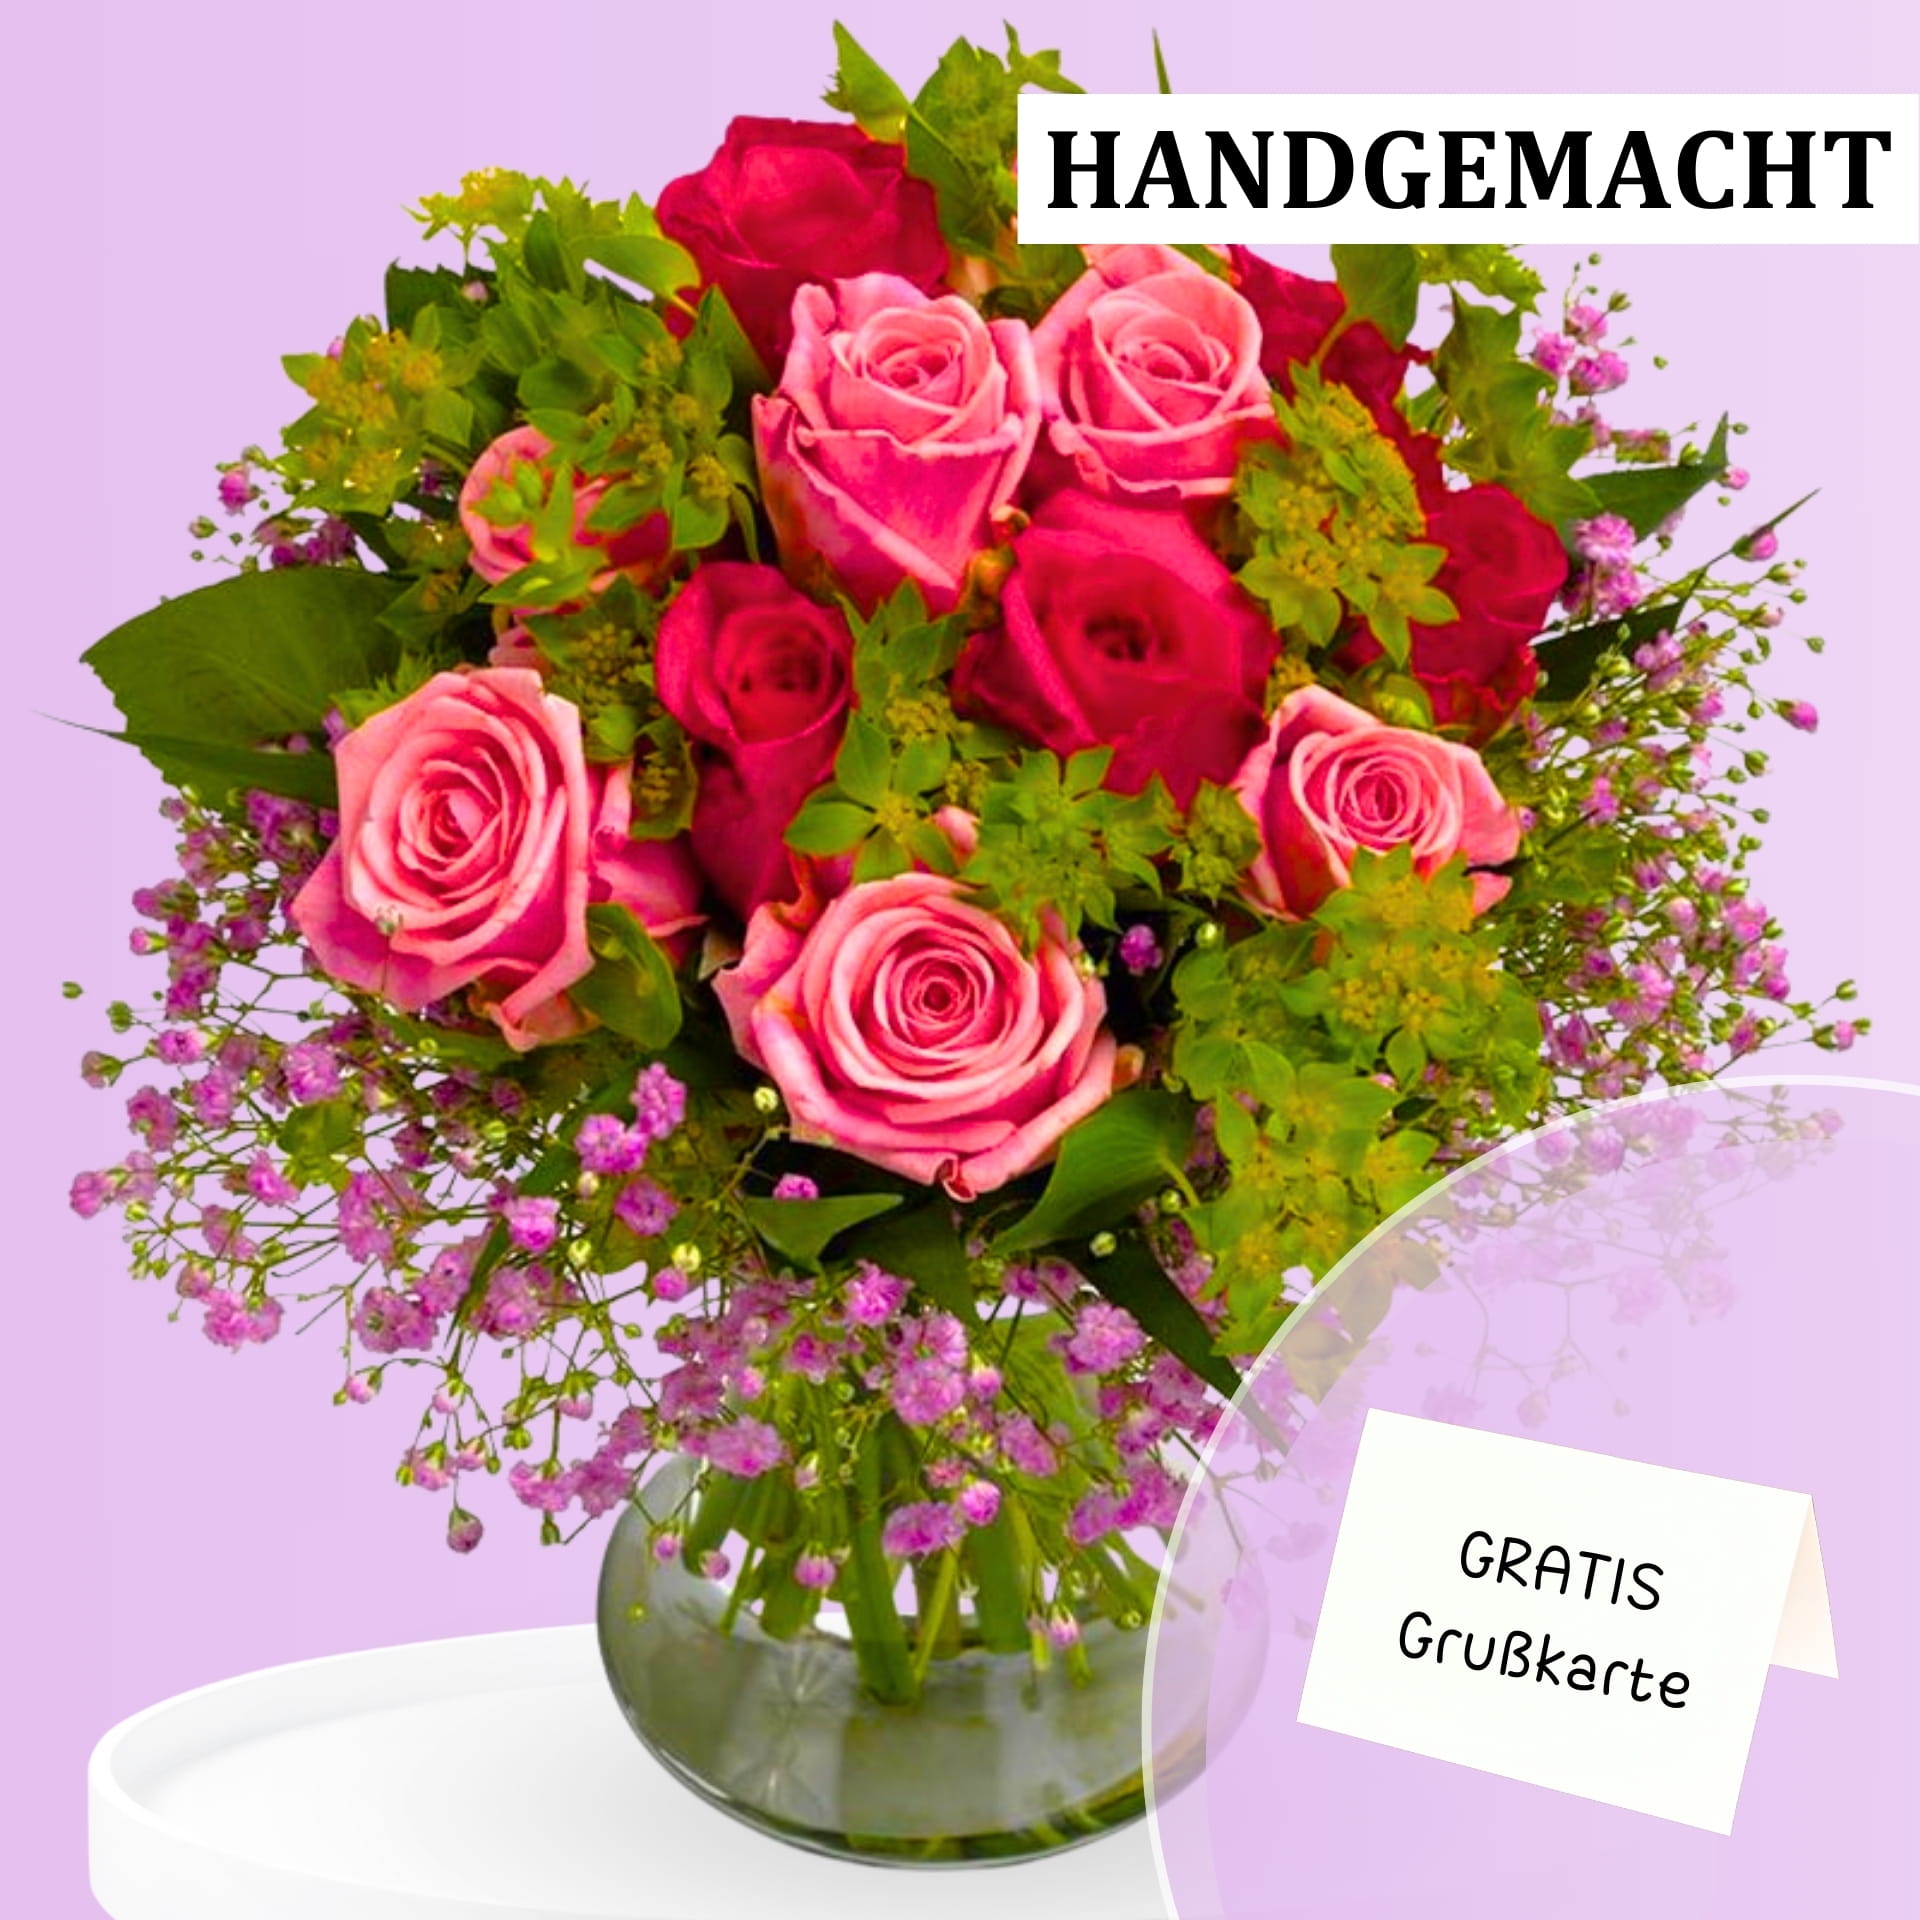 Handgemachter Blumenstrauß mit roten und rosa Rosen in einer Vase, umgeben von grünen Blättern und kleinen violetten Blumen. Text auf dem Bild: "HANDGEMACHT" und "GRATIS Grußkarte".